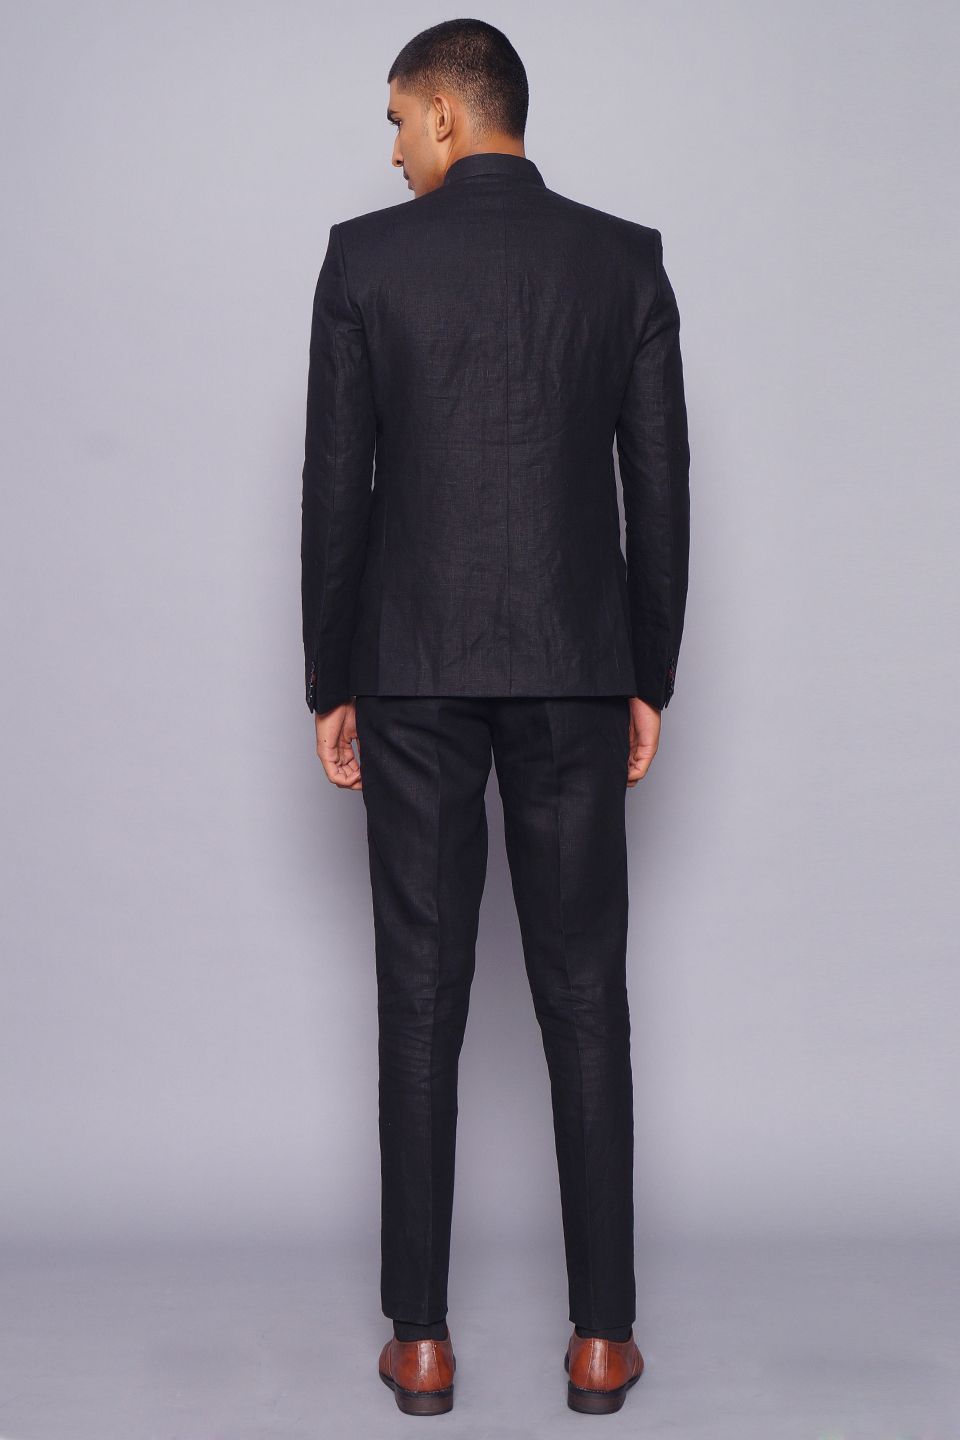 Pure Linen Black Suit